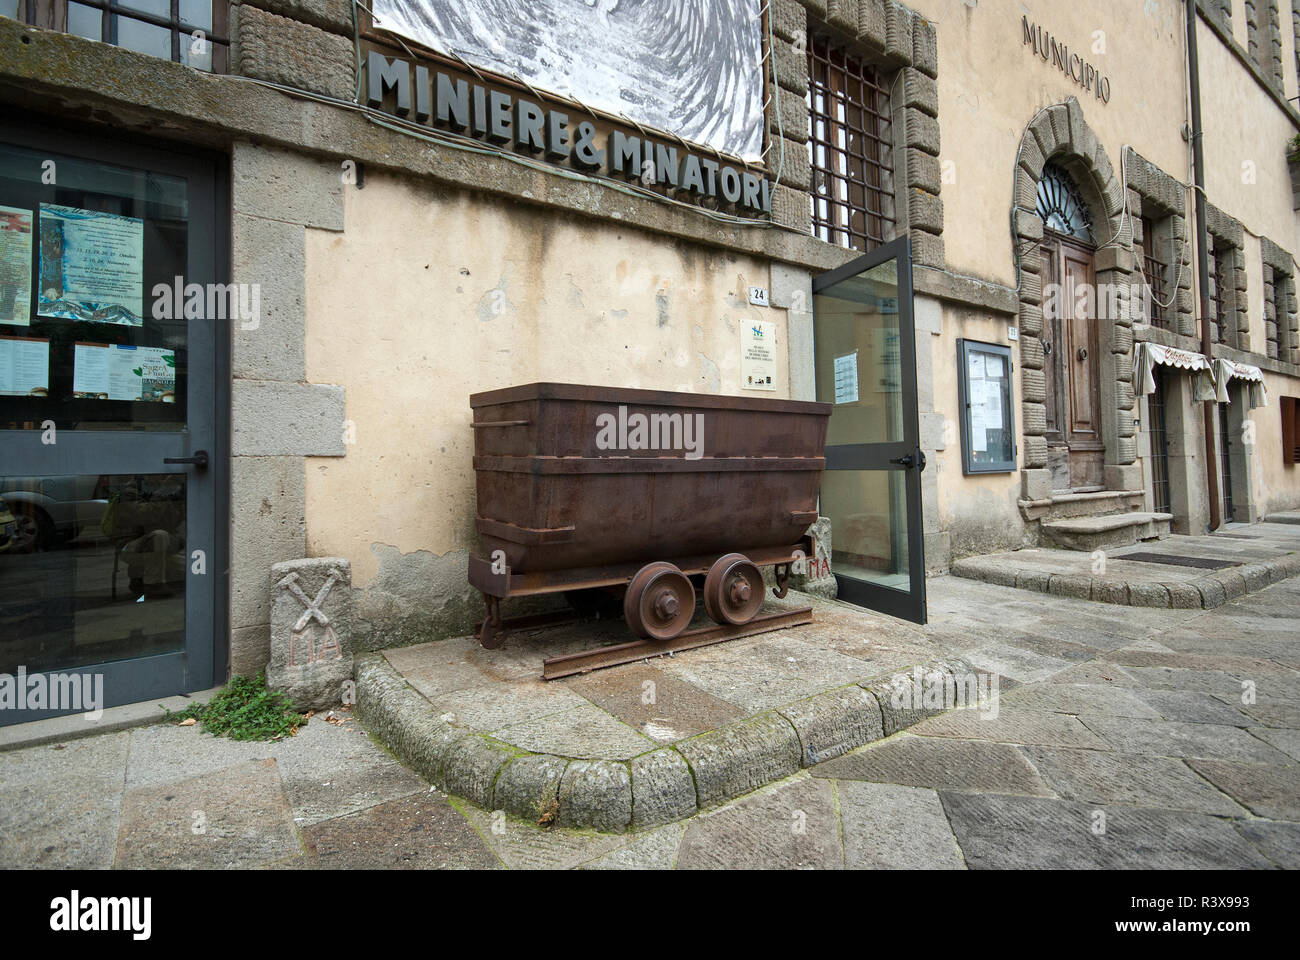 Mercury mines museum in Sforza Cesarini Palace at Santa Fiora, Grosseto, Tuscany, Italy Stock Photo